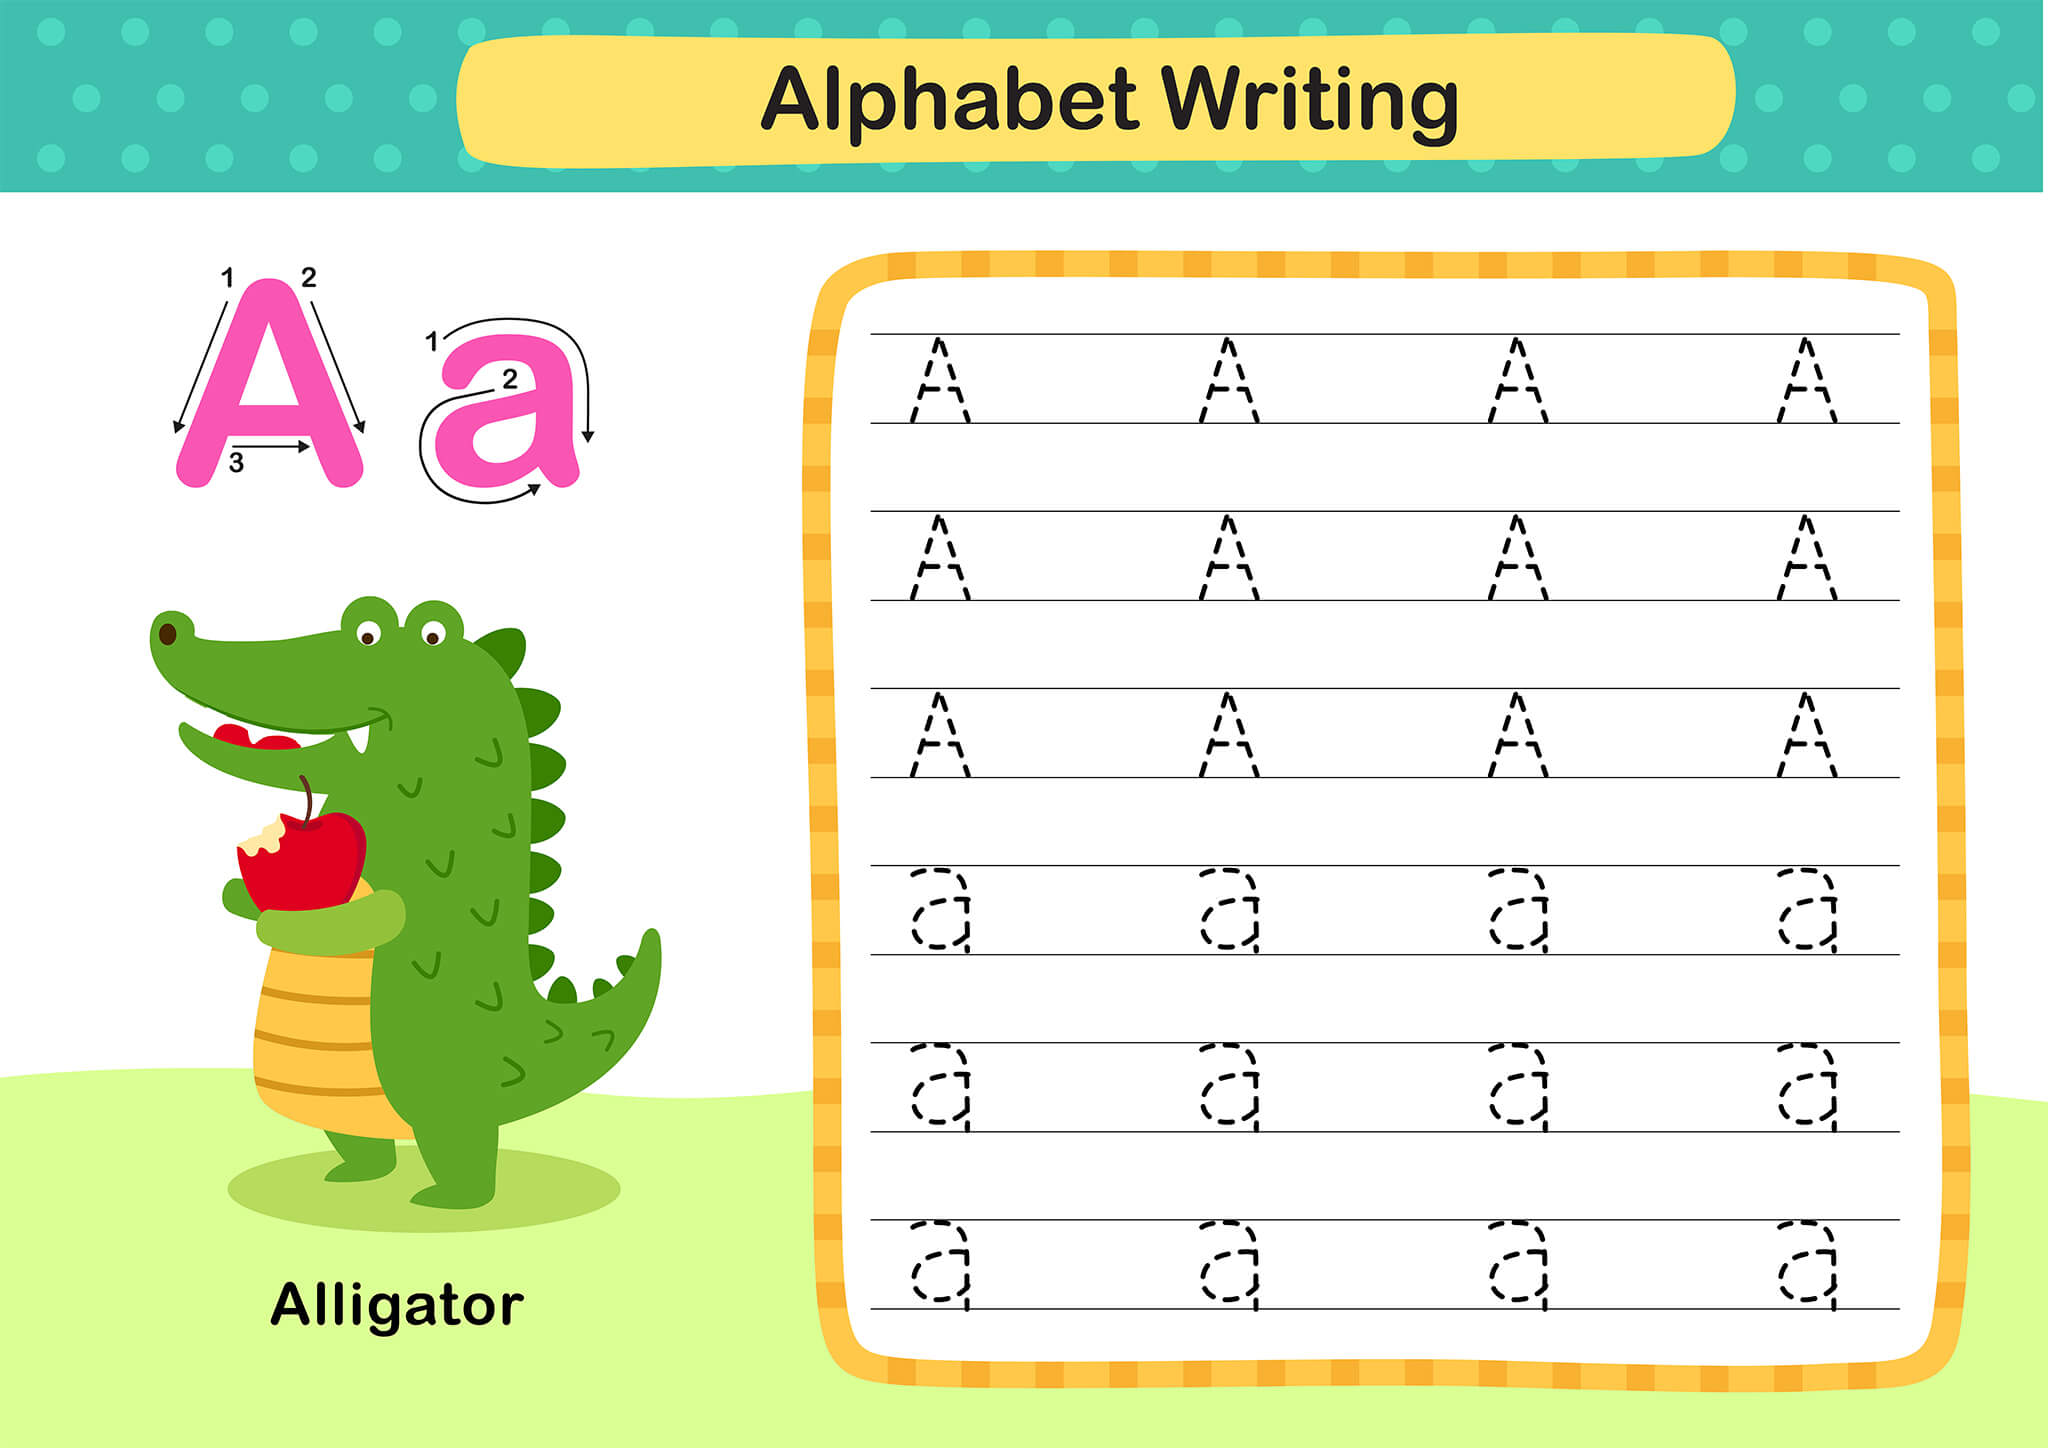 a-z-alphabet-letter-tracing-worksheet-alphabets-capital-letters-tracing-alphabet-tracing